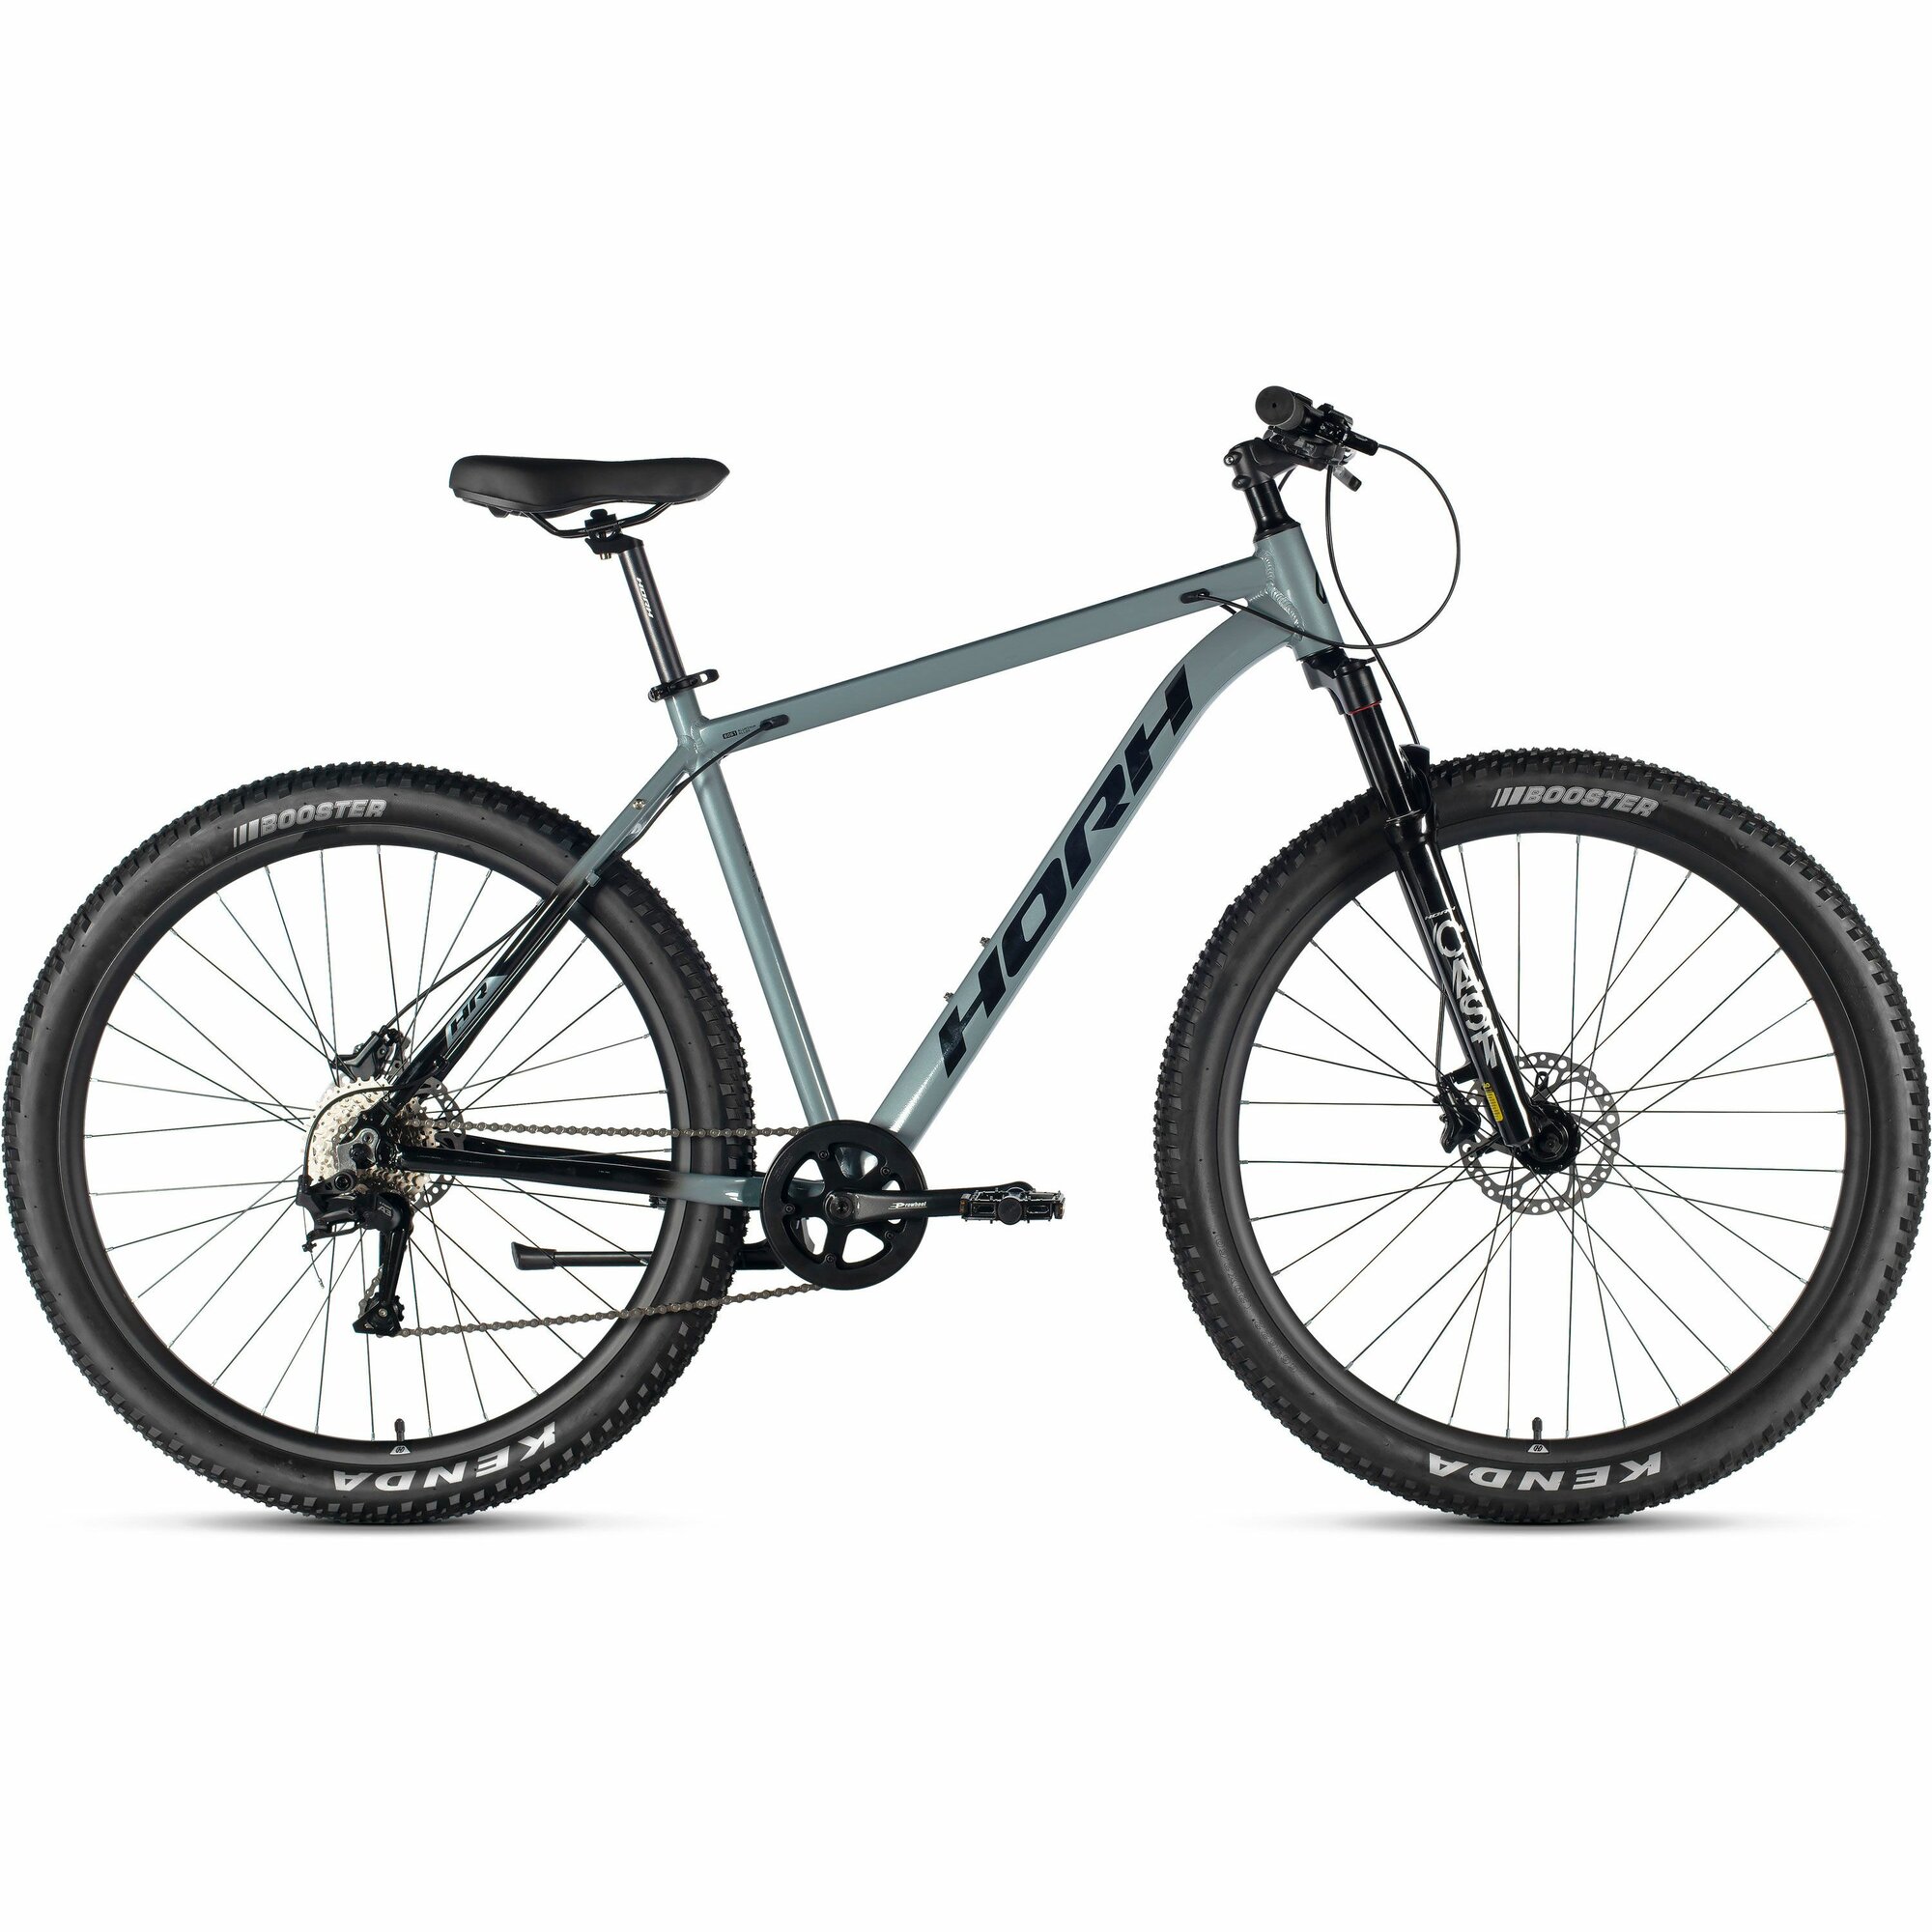 Велосипед горный HORH Cast AM 29" (2024), хардтейл, взрослый, мужской, алюминиевая рама, 8 скоростей, дисковые гидравлические тормоза, цвет Grey-Black, серый/черный цвет, размер рамы 21", для роста 185-195 см